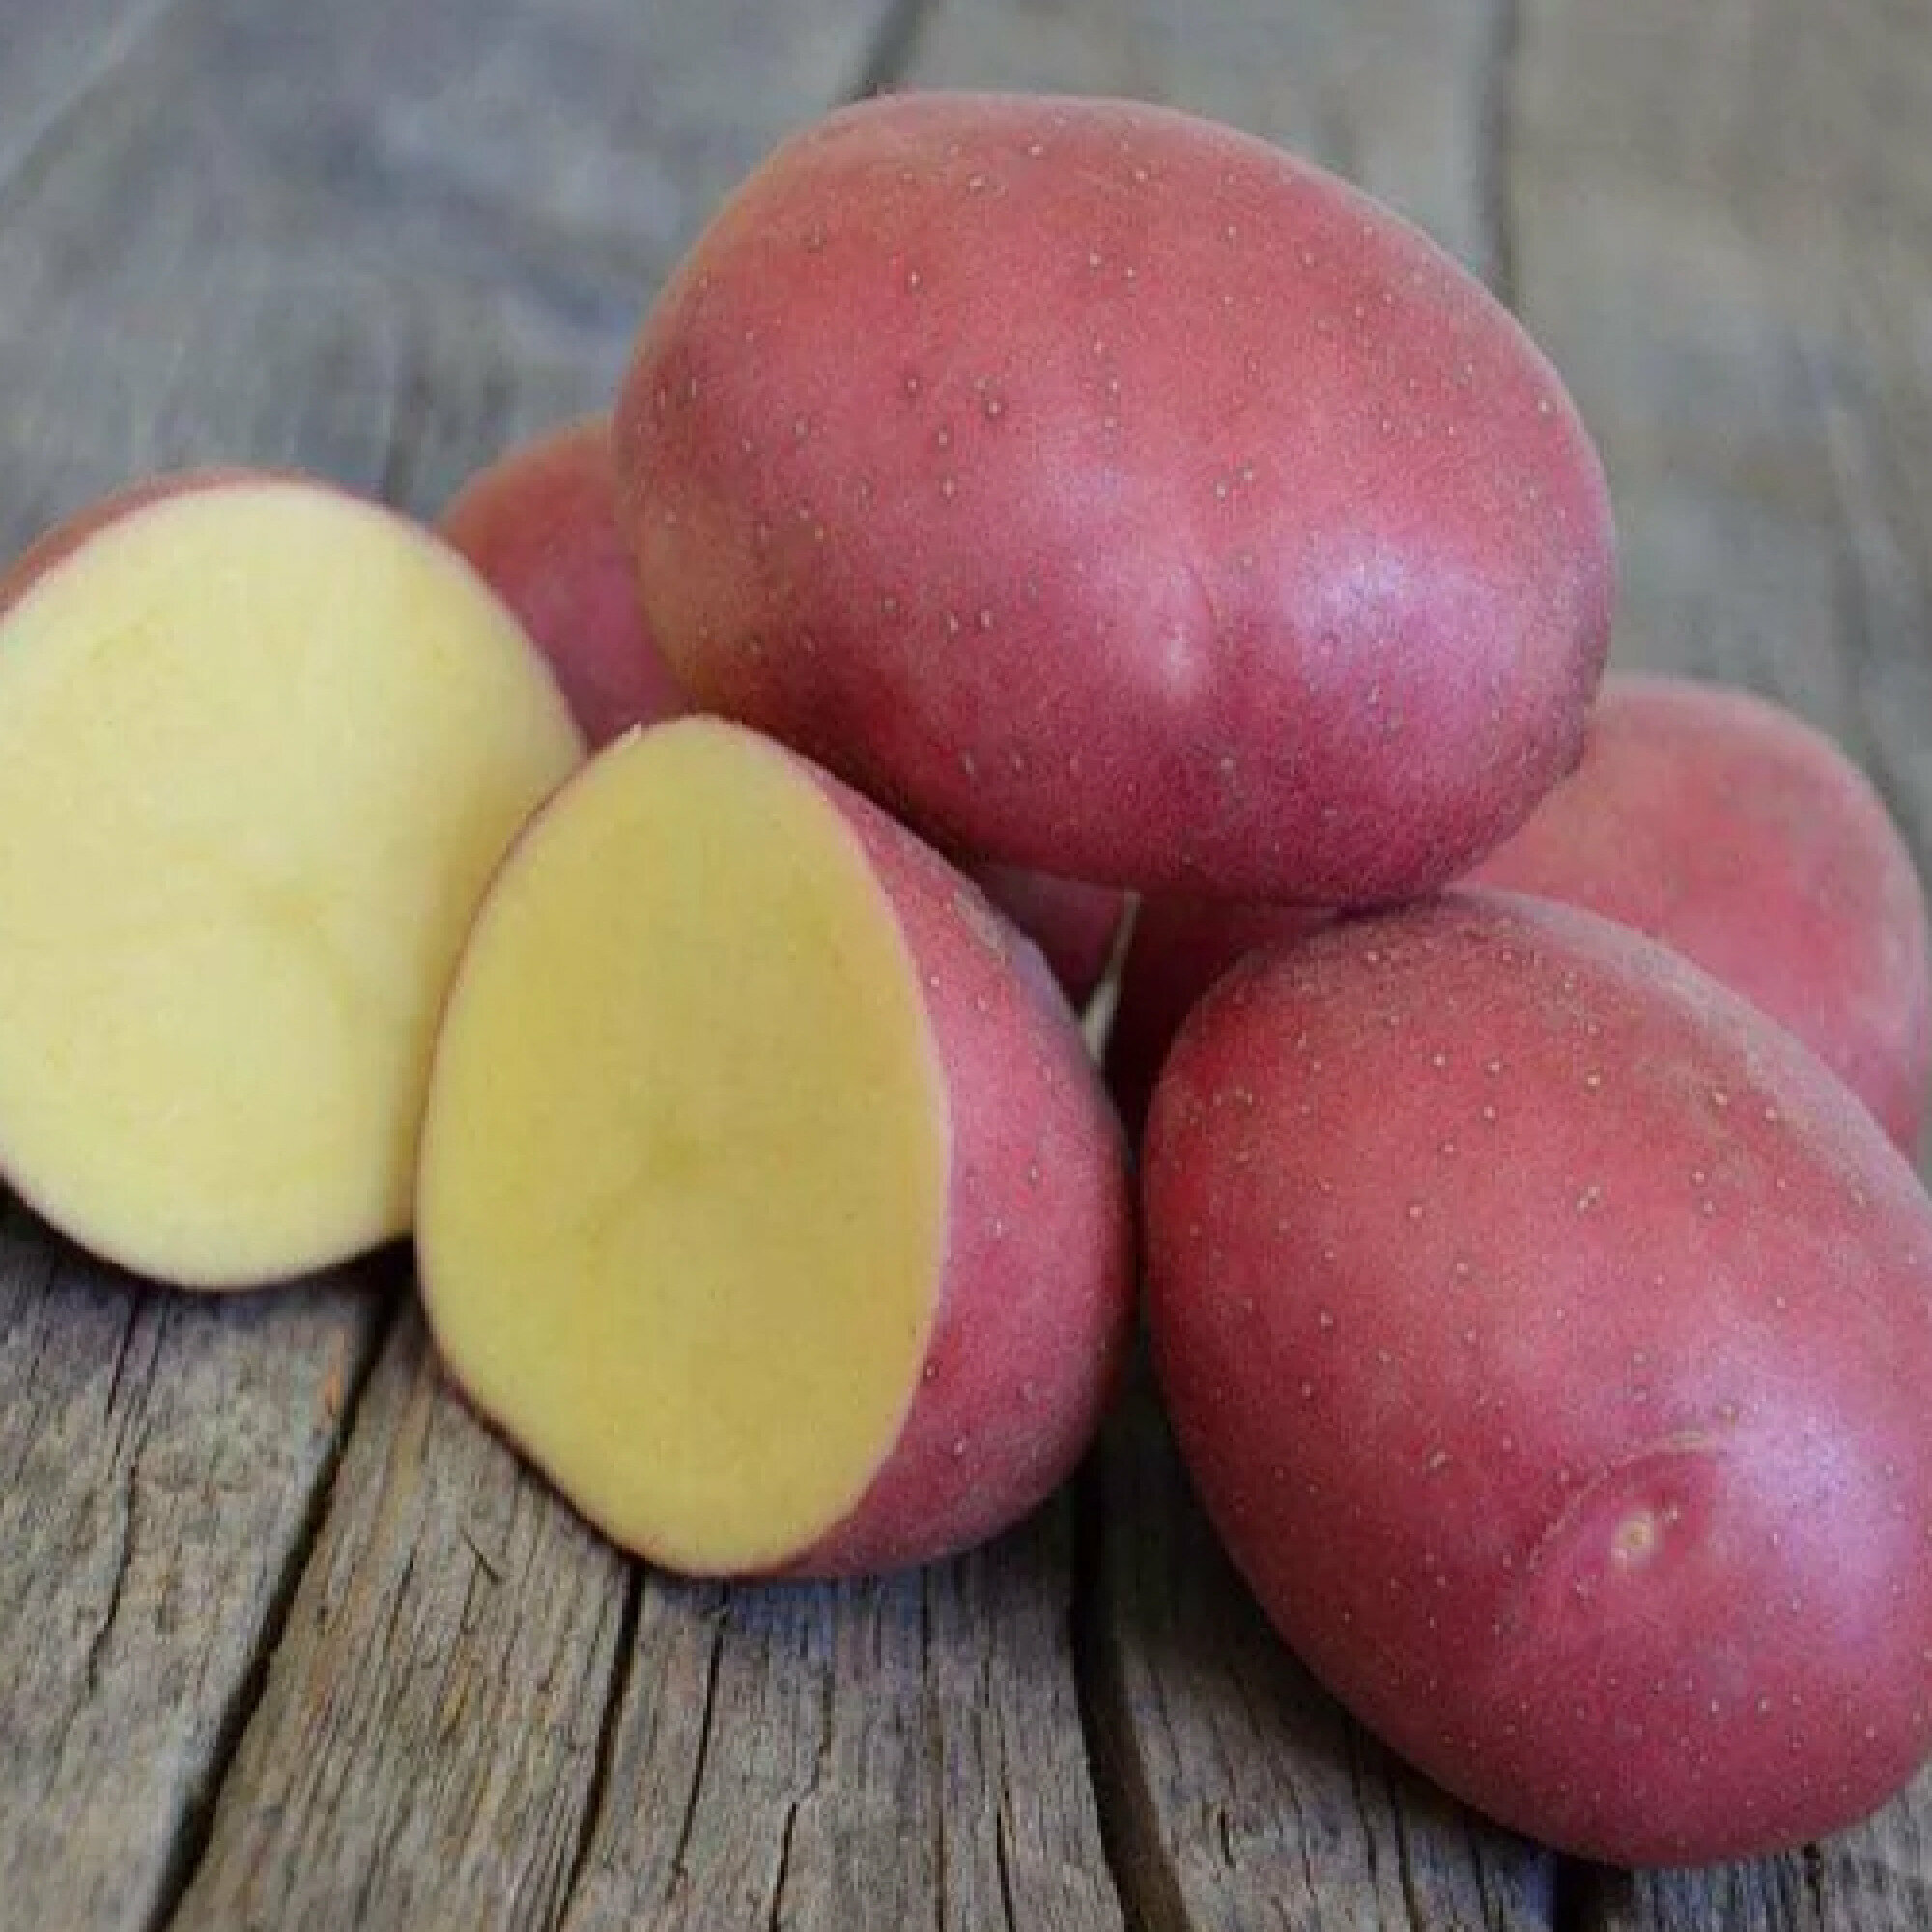 Картофель семенной "Ред Скарлет", 2 кг, раннеспелый сорт, имеет высокую оценку фермеров за устойчивость к болезням и условиям хранения, за привлекательный вид и отменный вкус